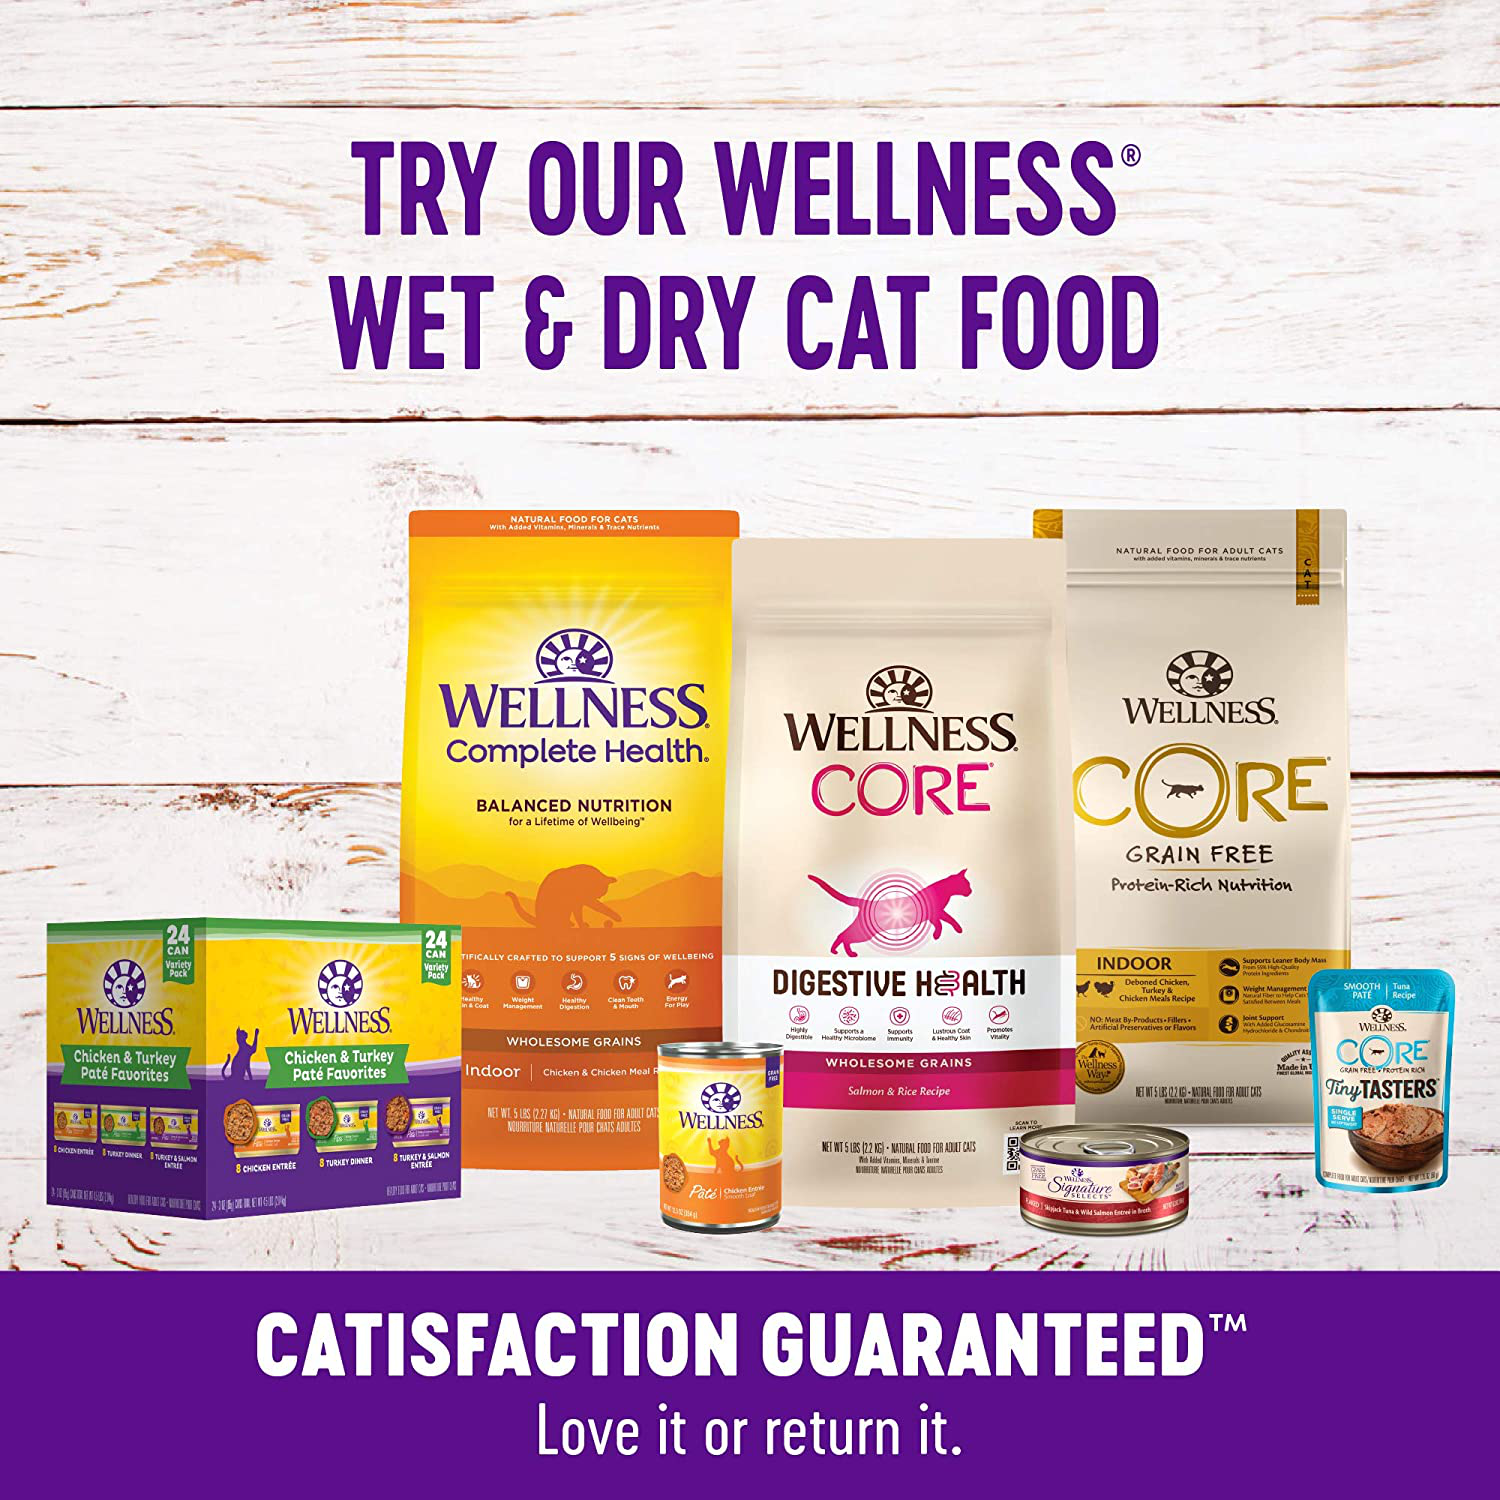 Wellness Kittles Crunchy Natural Grain Free Cat Treats Animals & Pet Supplies > Pet Supplies > Cat Supplies > Cat Treats Wellness Natural Pet Food   